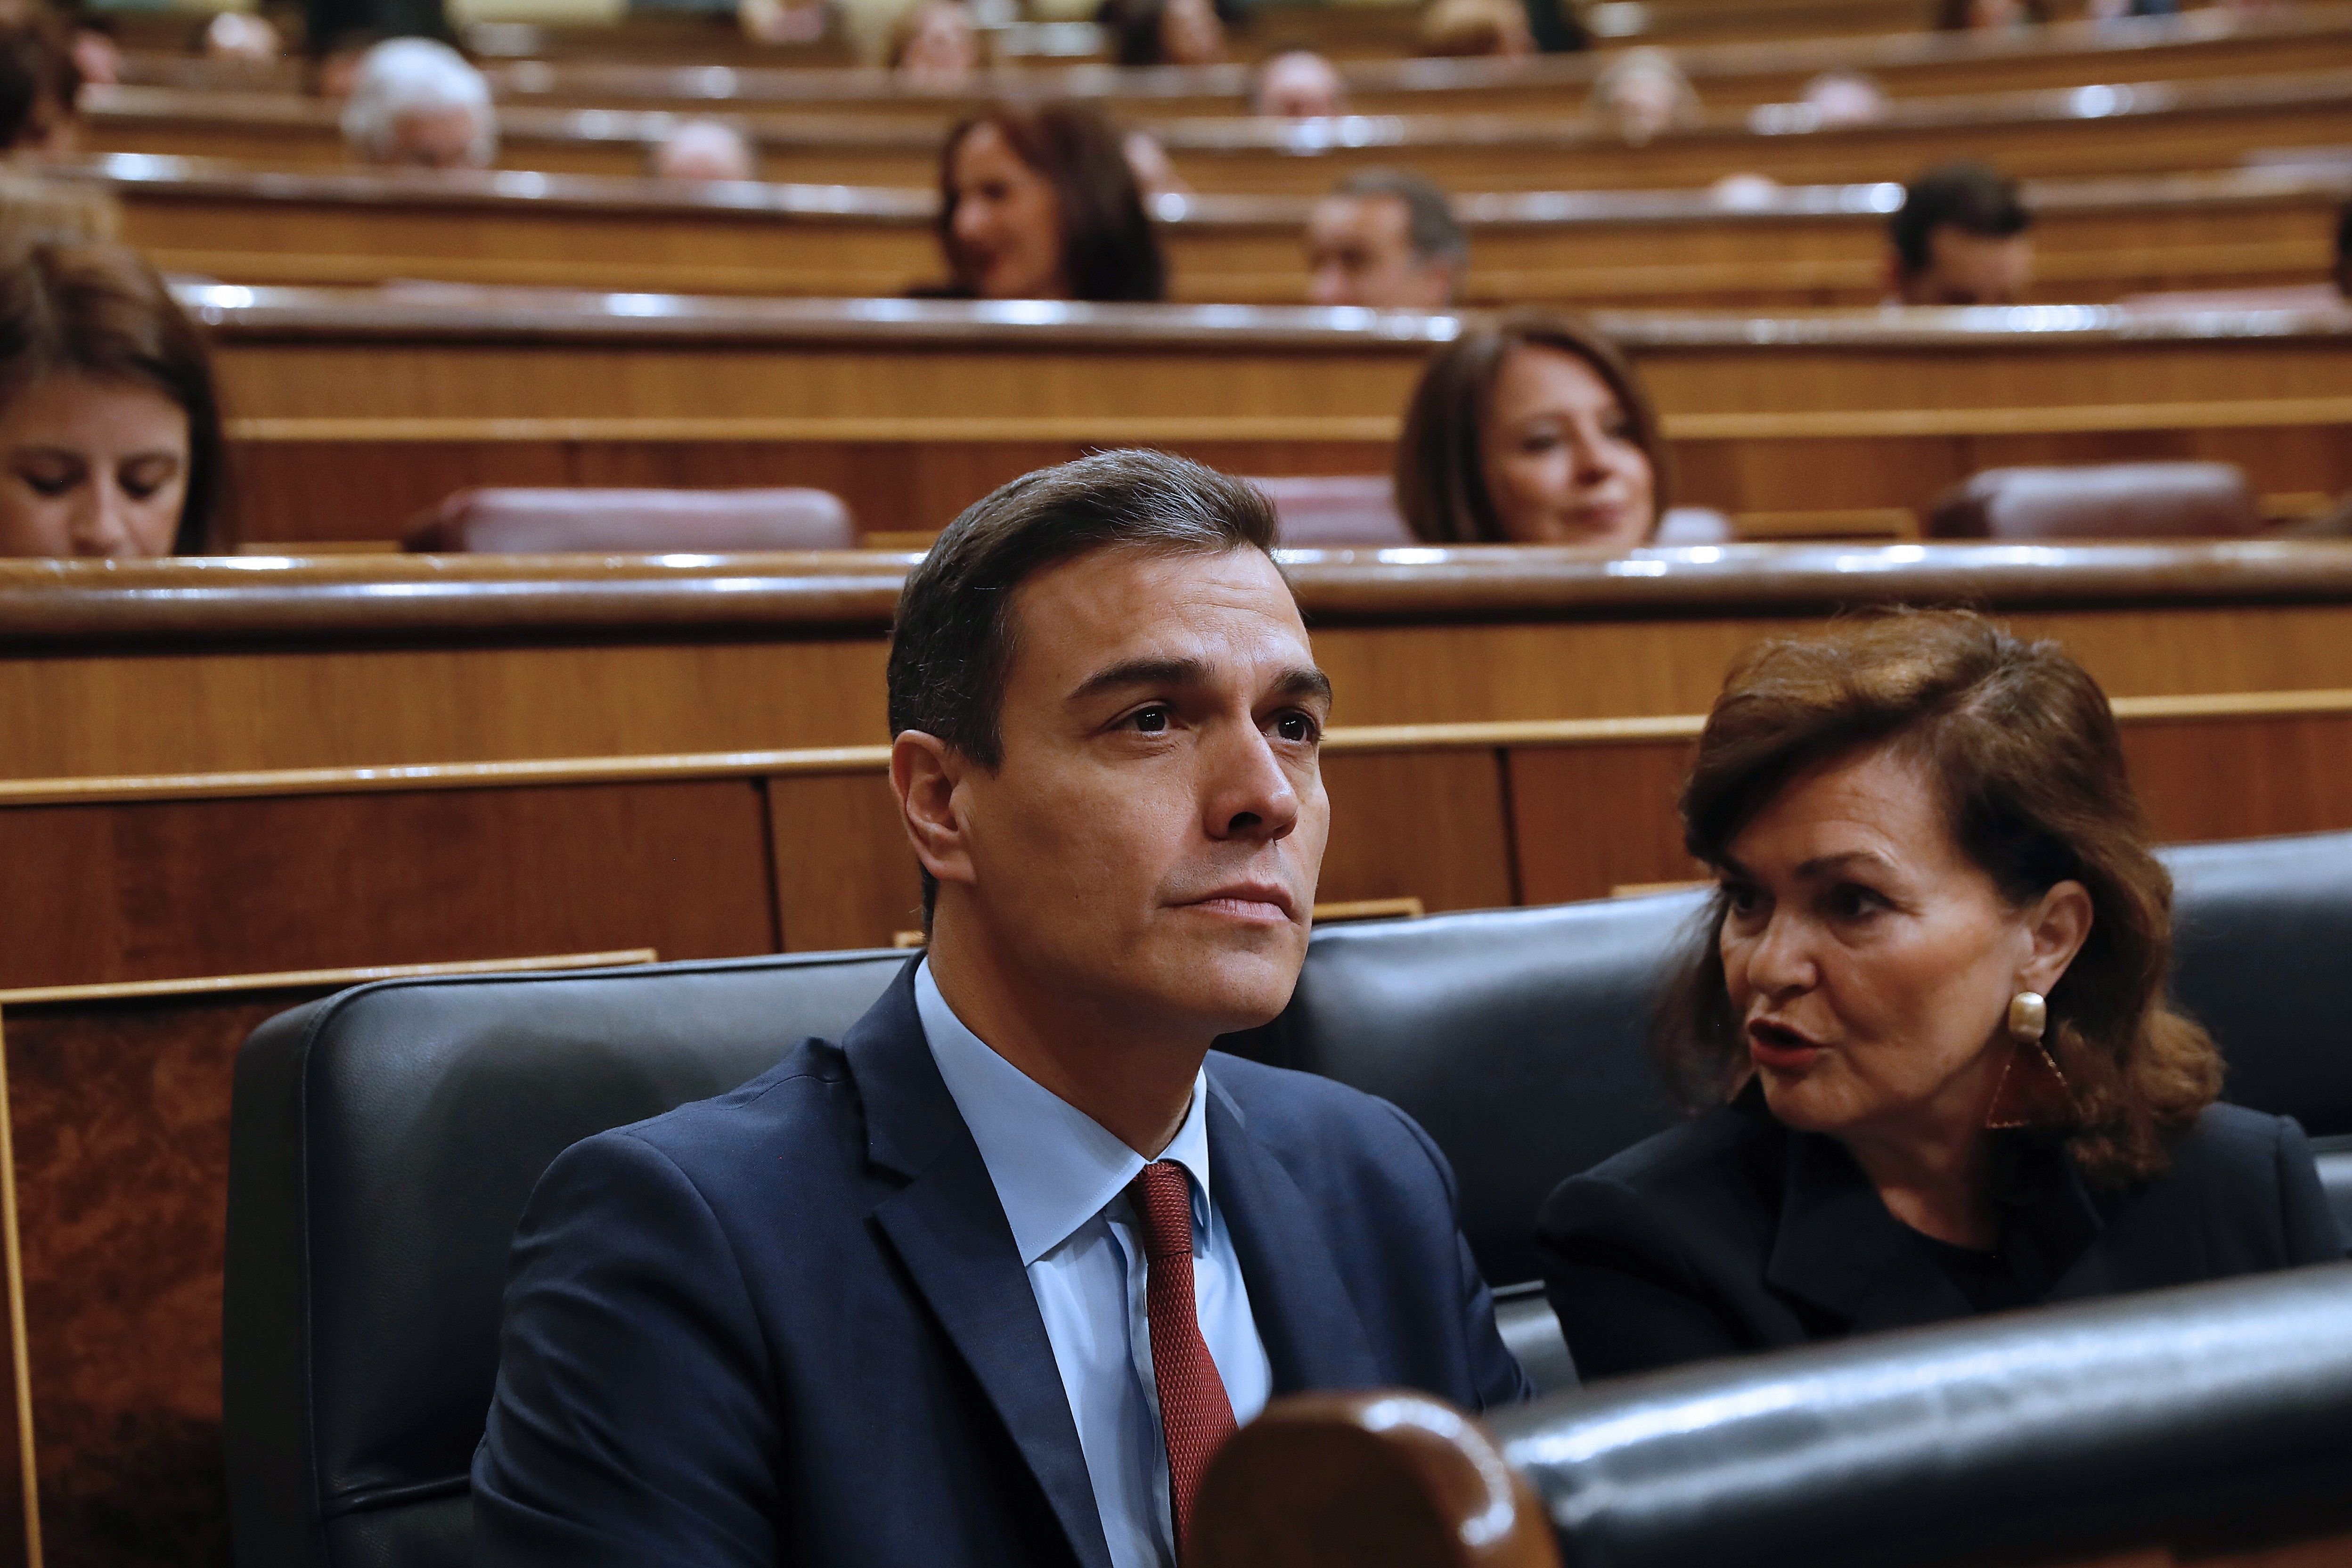 Pedro Sánchez Carmen Calvo Congres dels Diputats febrer 2019 EFE